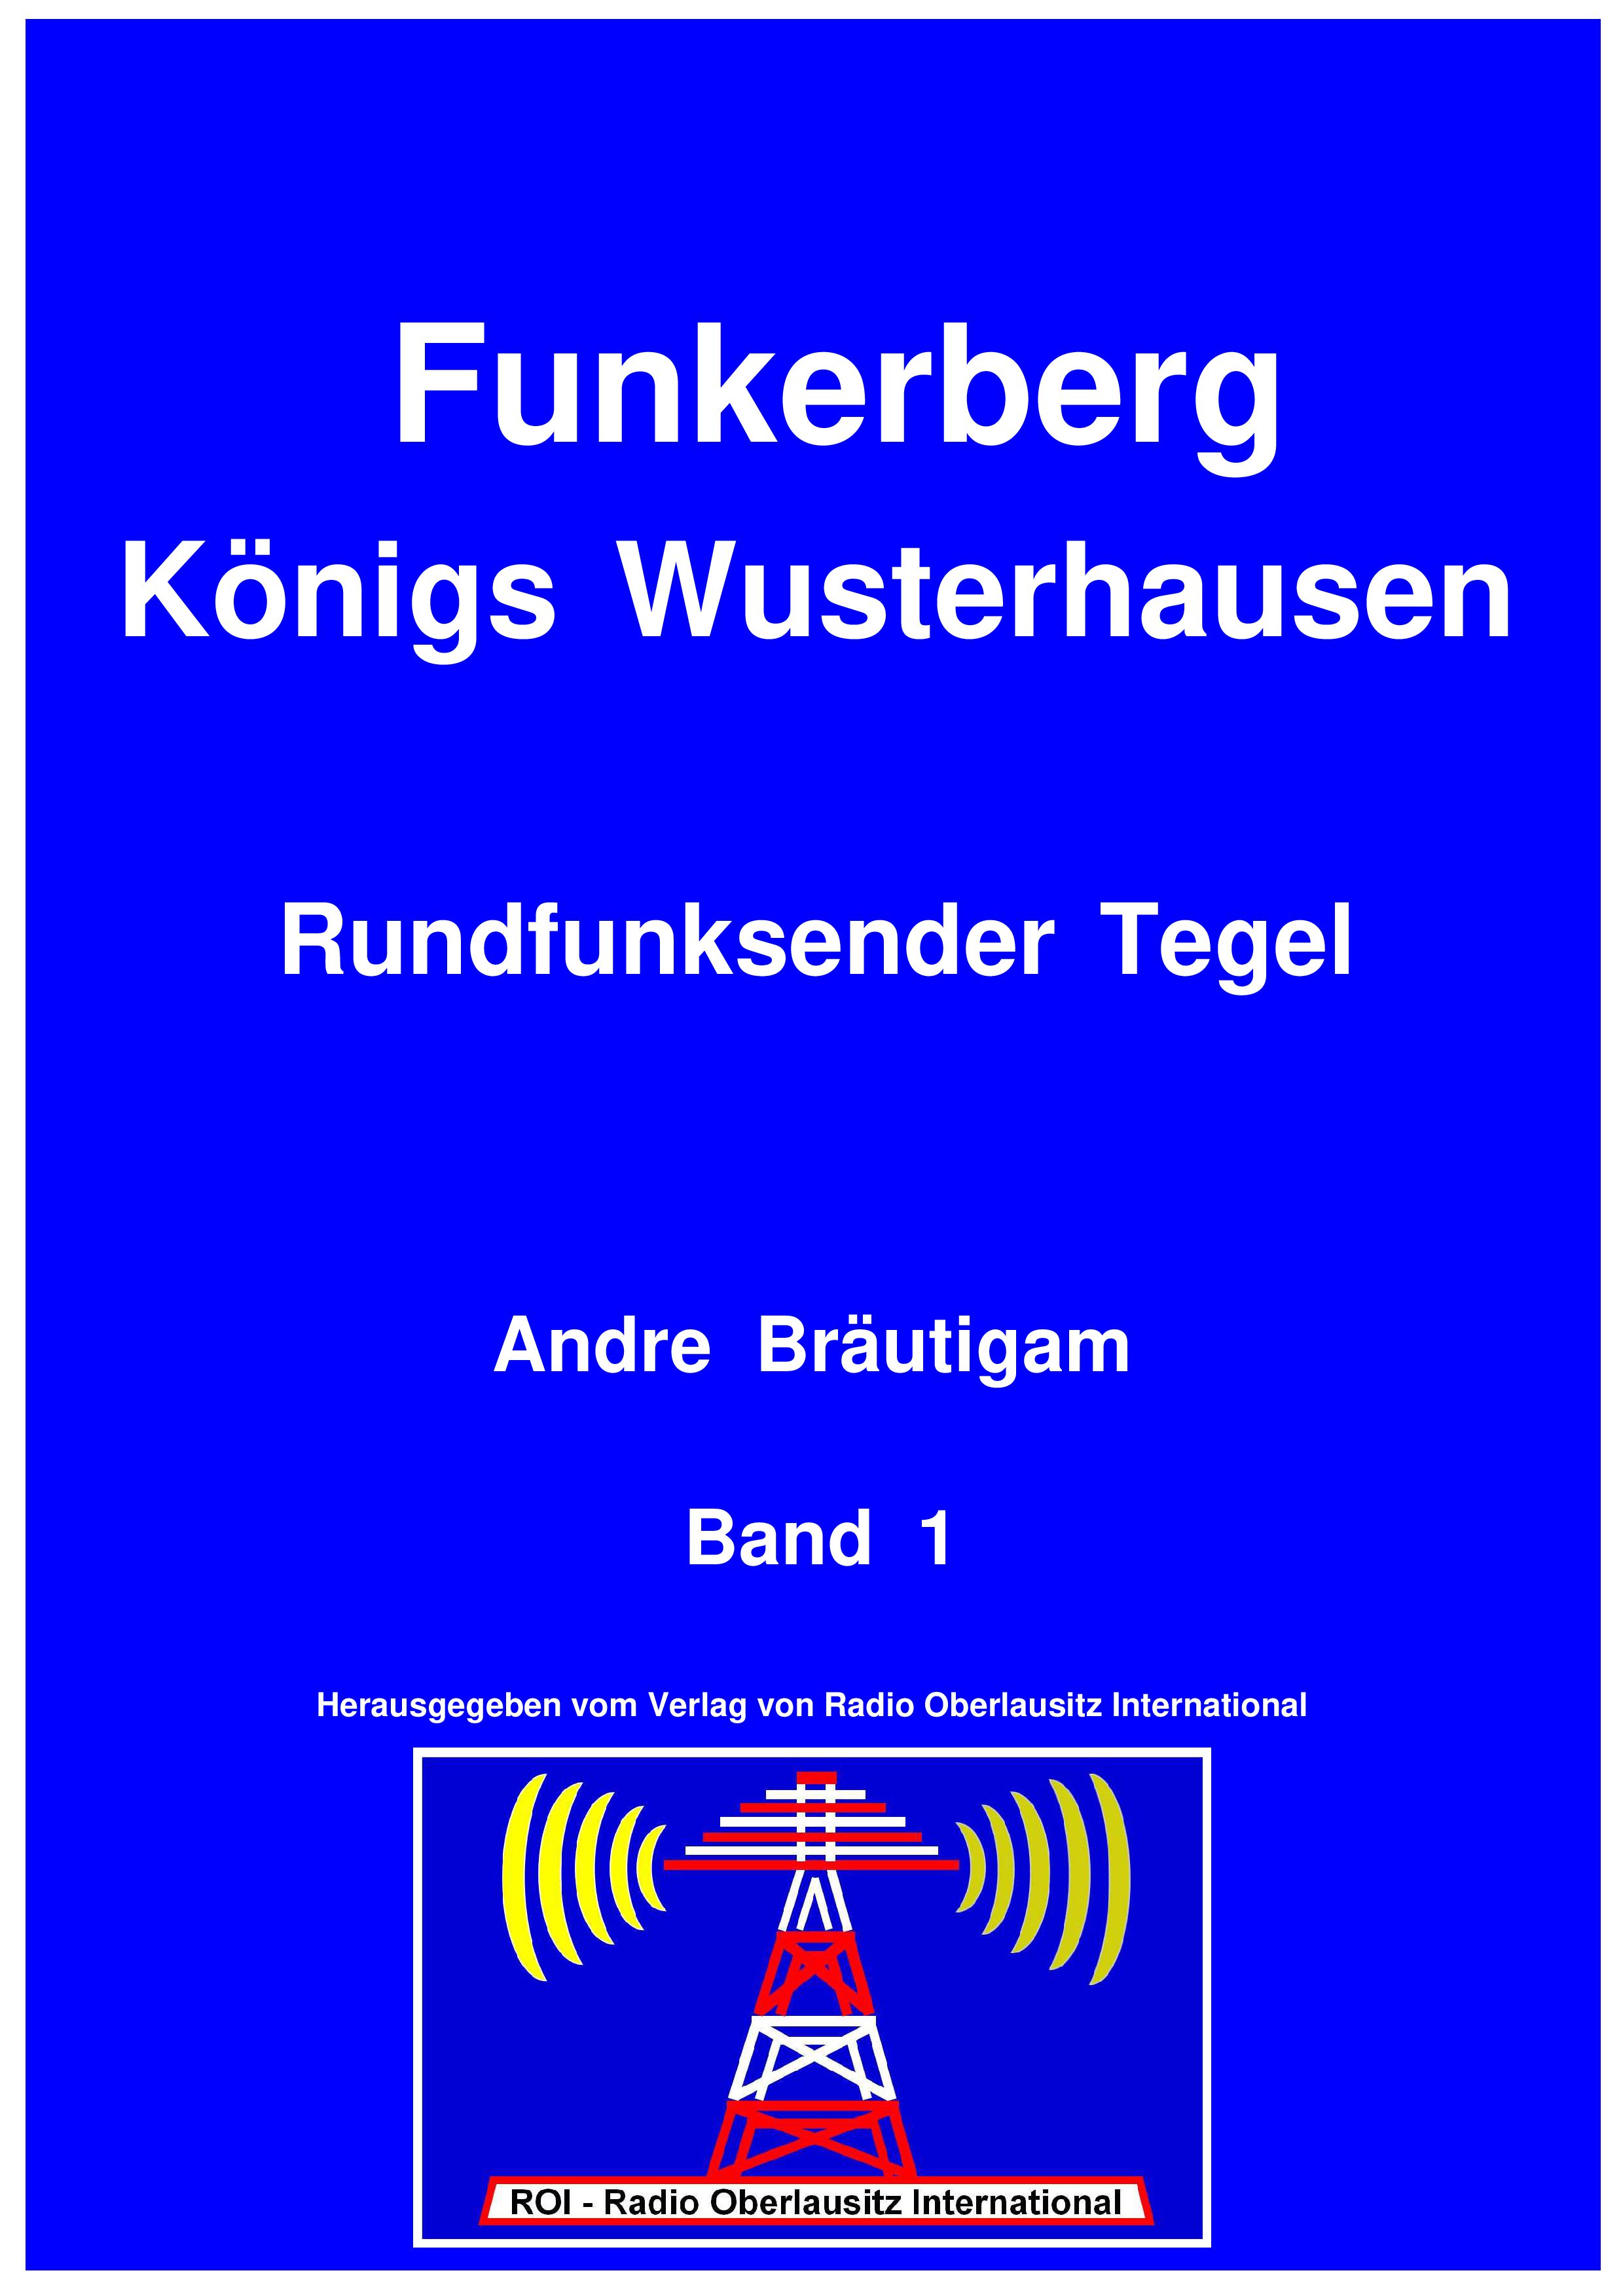 Funkerberg Königs Wusterhausen Rundfunksender Tegel